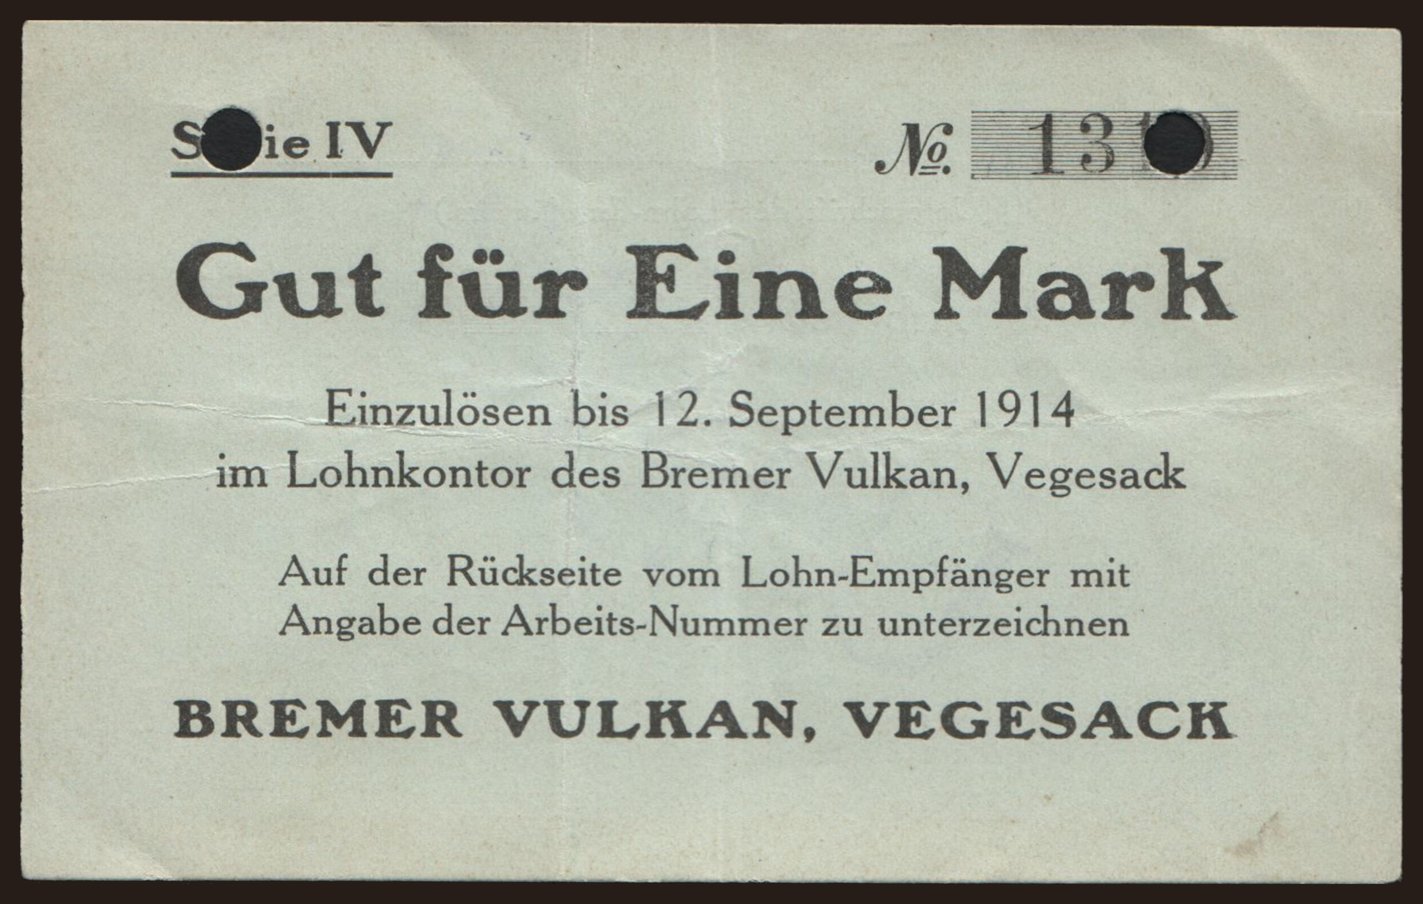 Vegesack/ Bremer Vulkan, 1 Mark, 1914